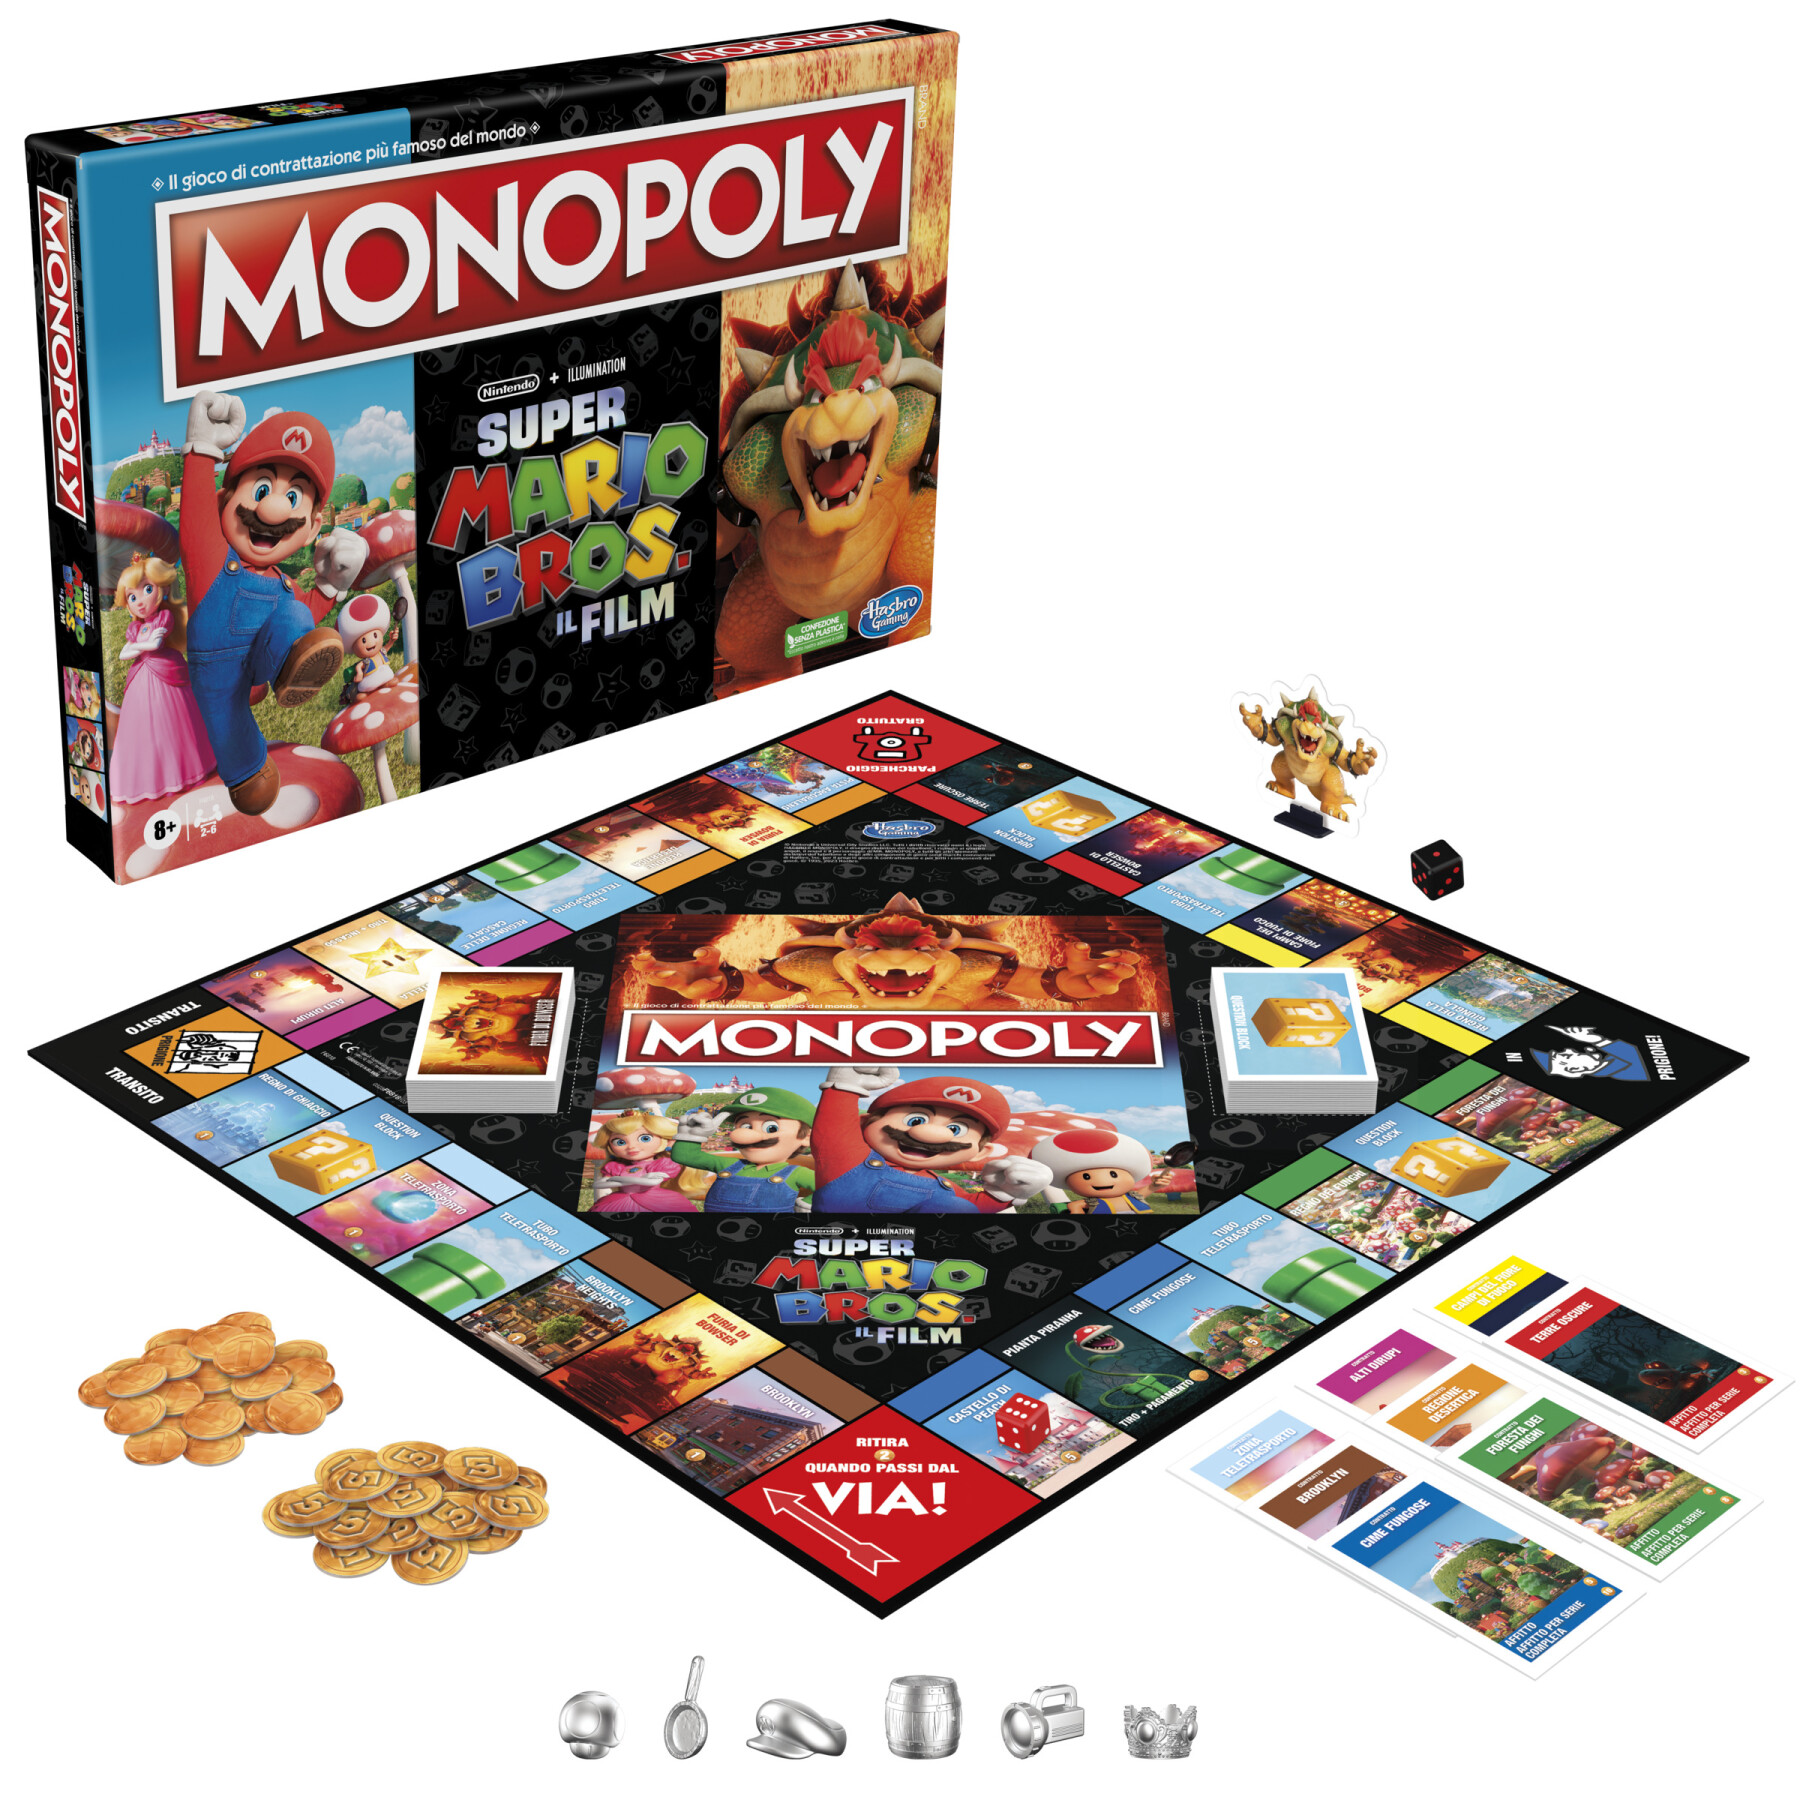 Monopoly the super mario bros. movie edition, gioco da tavolo per bambini e bambine, contiene la pedina di bowser, giochi per famiglie - MONOPOLY, Super Mario